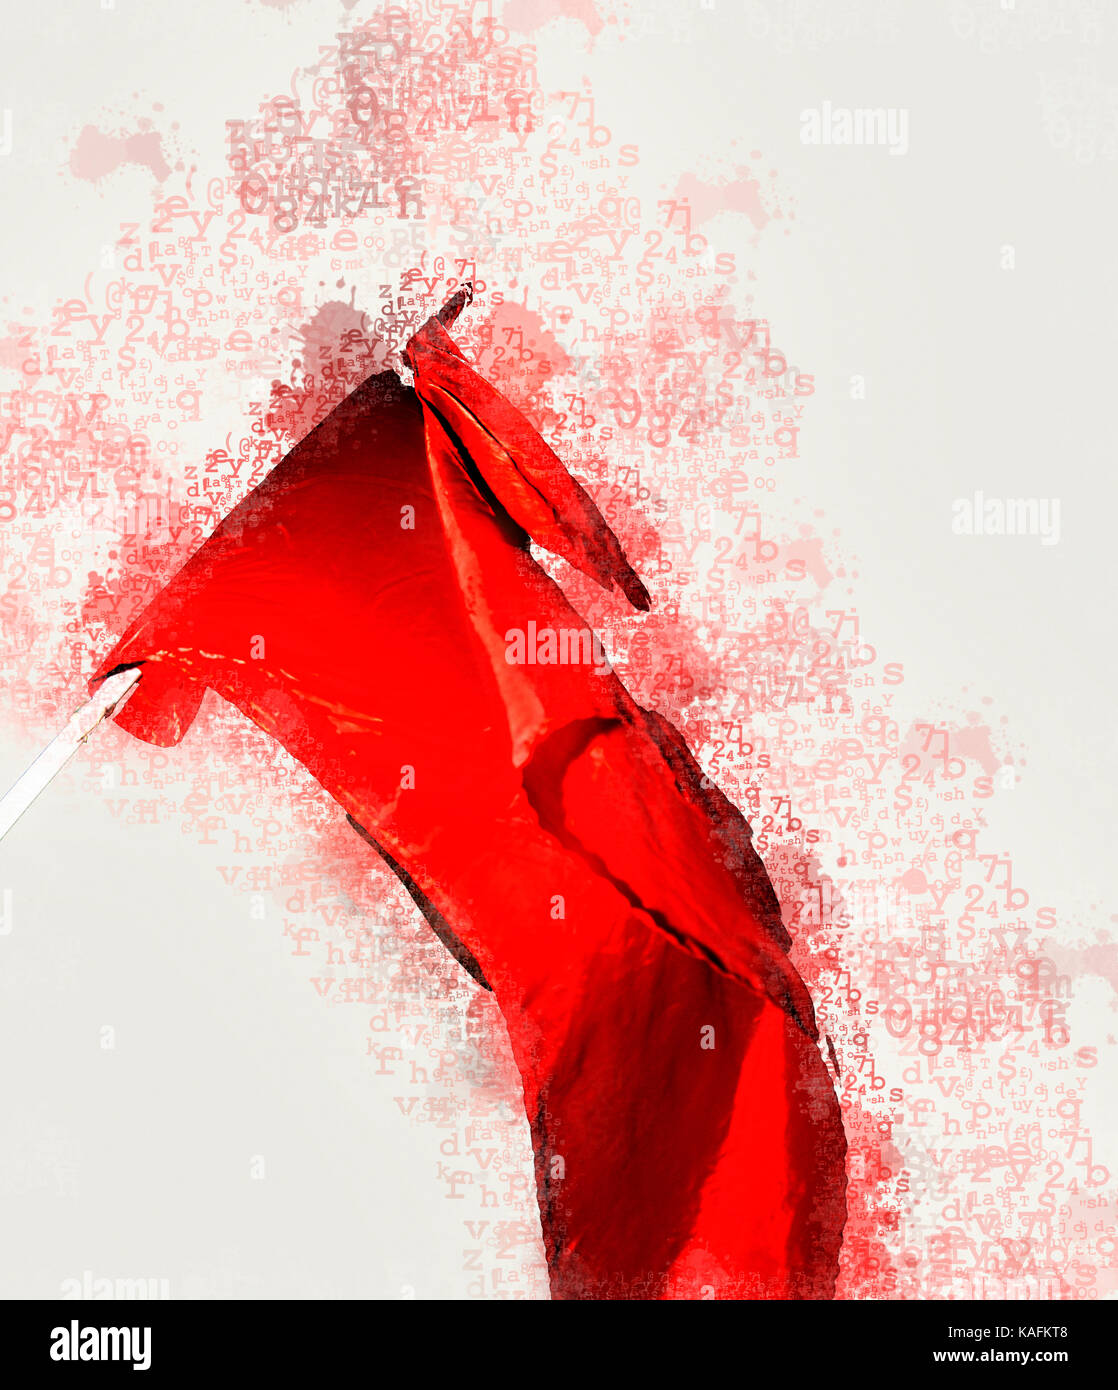 Digital verbesserte Bild der roten kommunistischen Bewegung Flagge hoch während eines Protestes Stockfoto